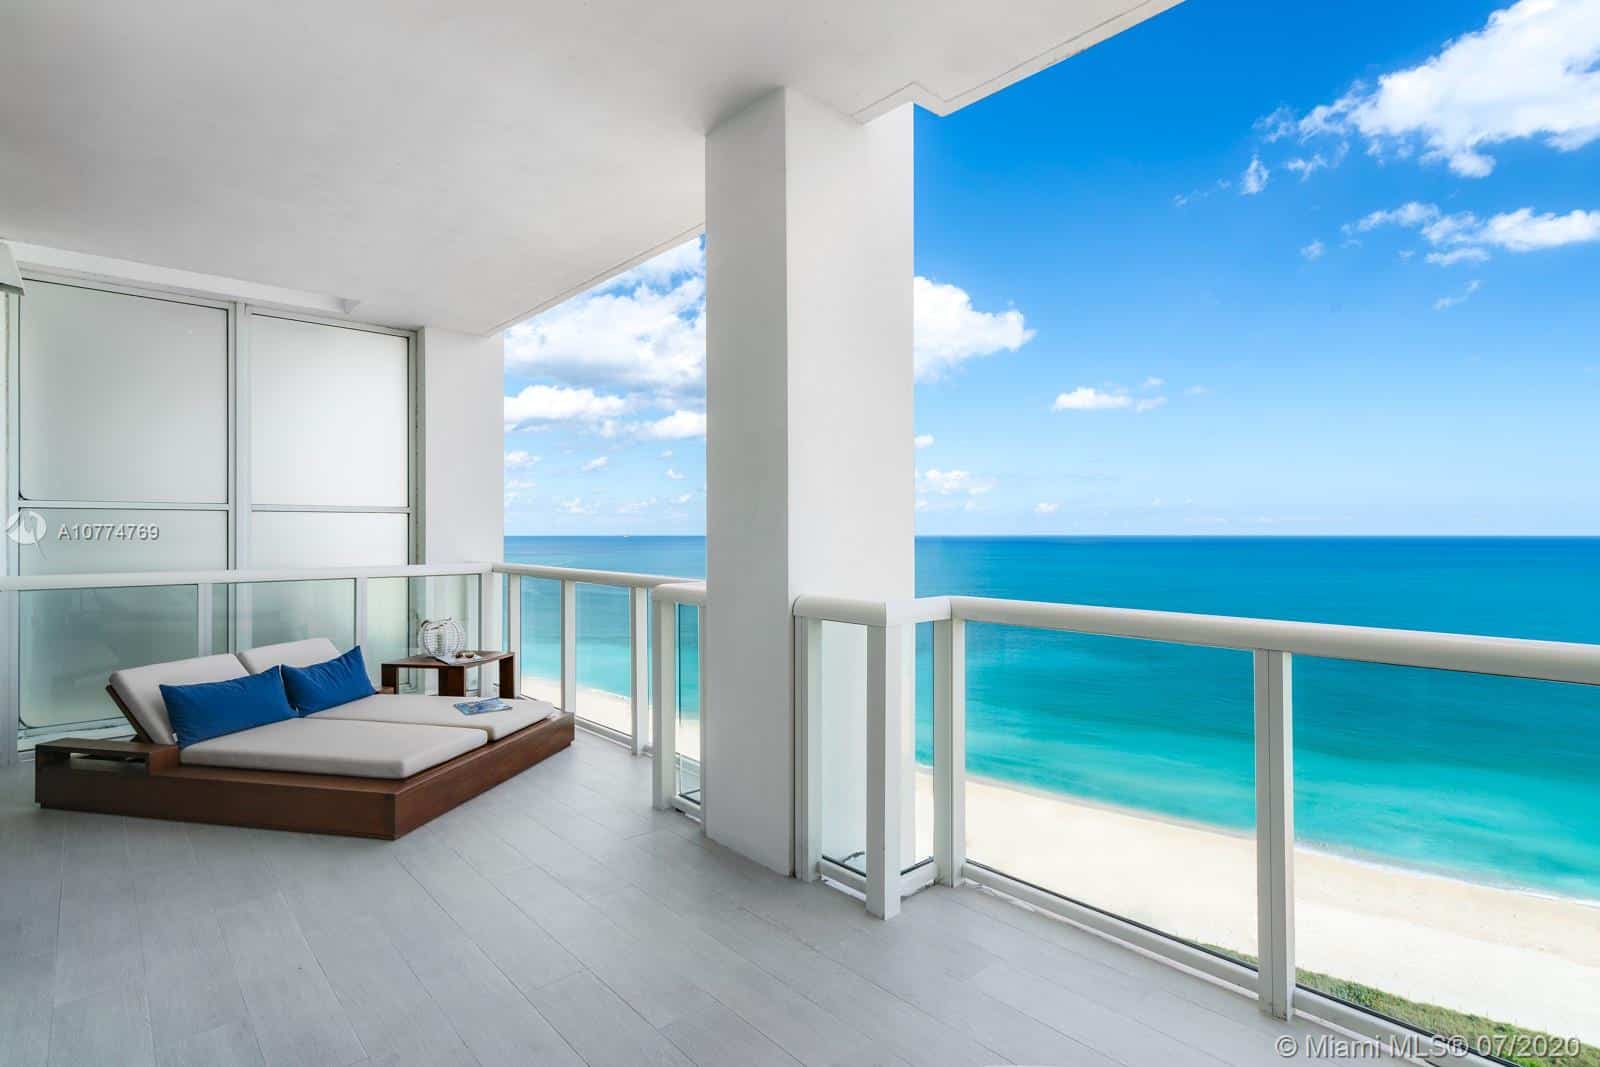 Ultra-Luxury Condos for Sale in Miami Beach: 50 S POINTE DR #2502, MIAMI BEACH, FL 33139